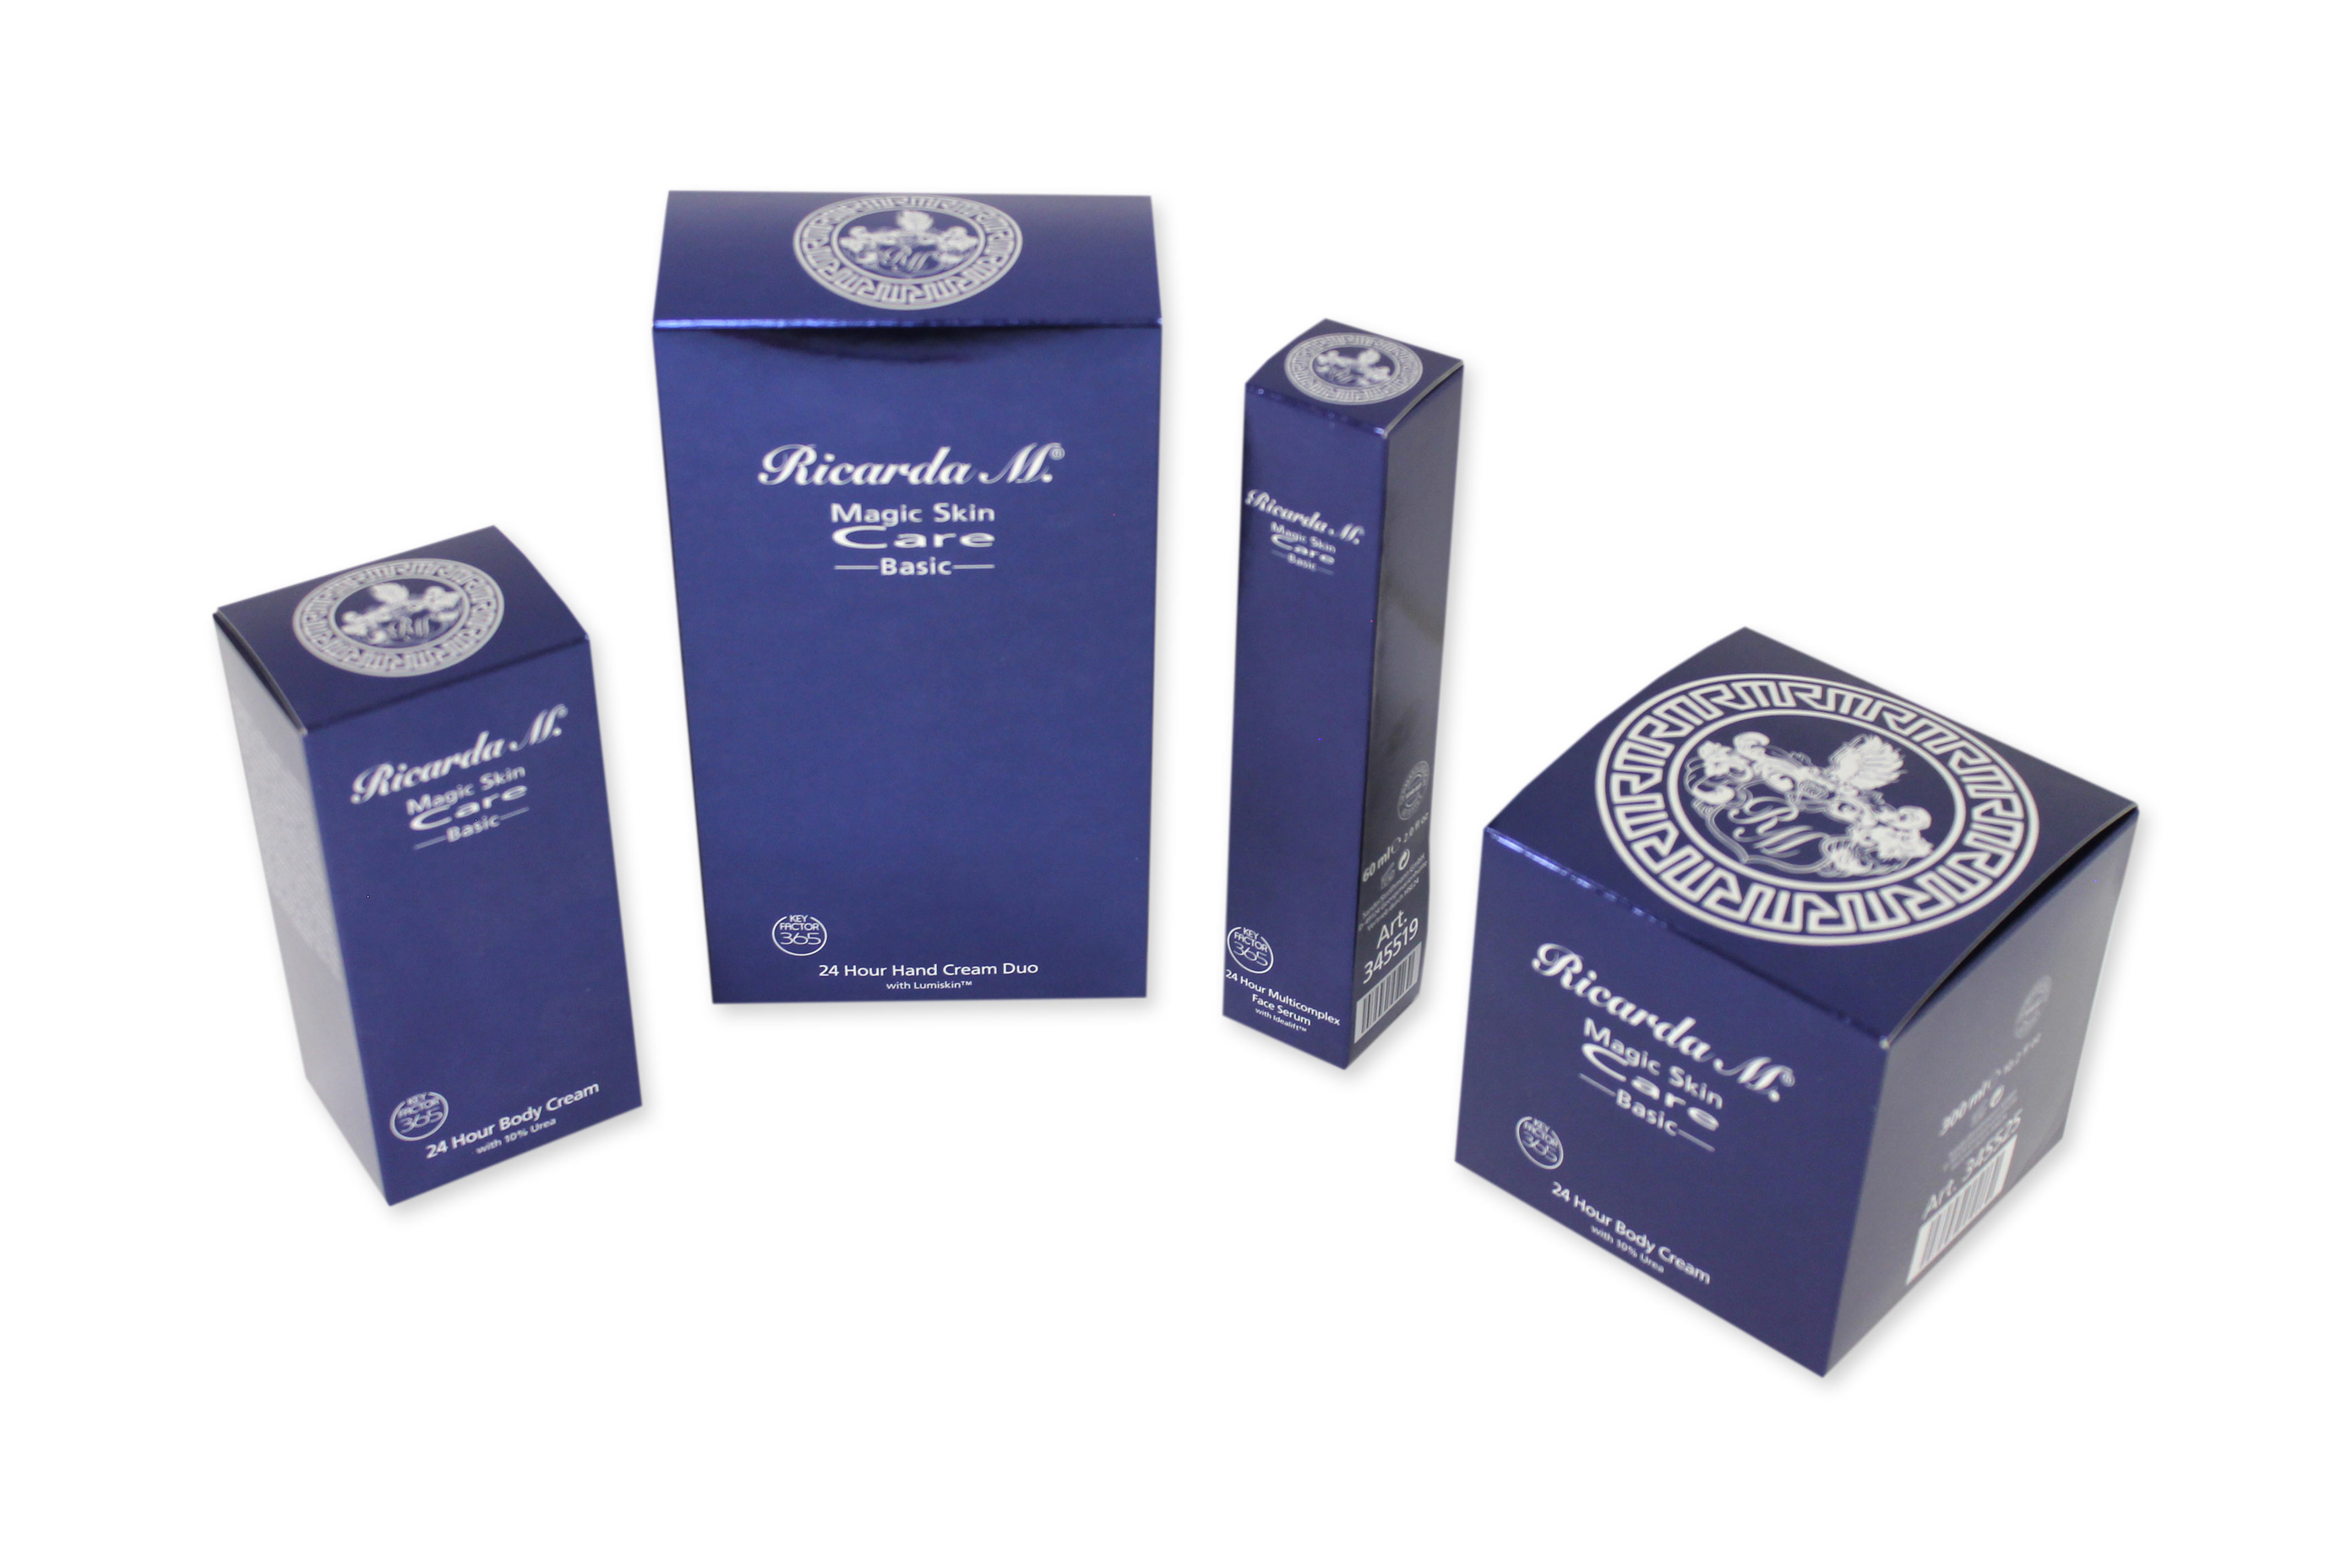 Vier unterschiedlich große Faltschachteln der Marke Ricarda M. Eine Faltschachtel ist quadratisch und die anderen drei eher länglich. Alle Schachteln sind vollflächig blau mit weißer Schrift bedruckt.